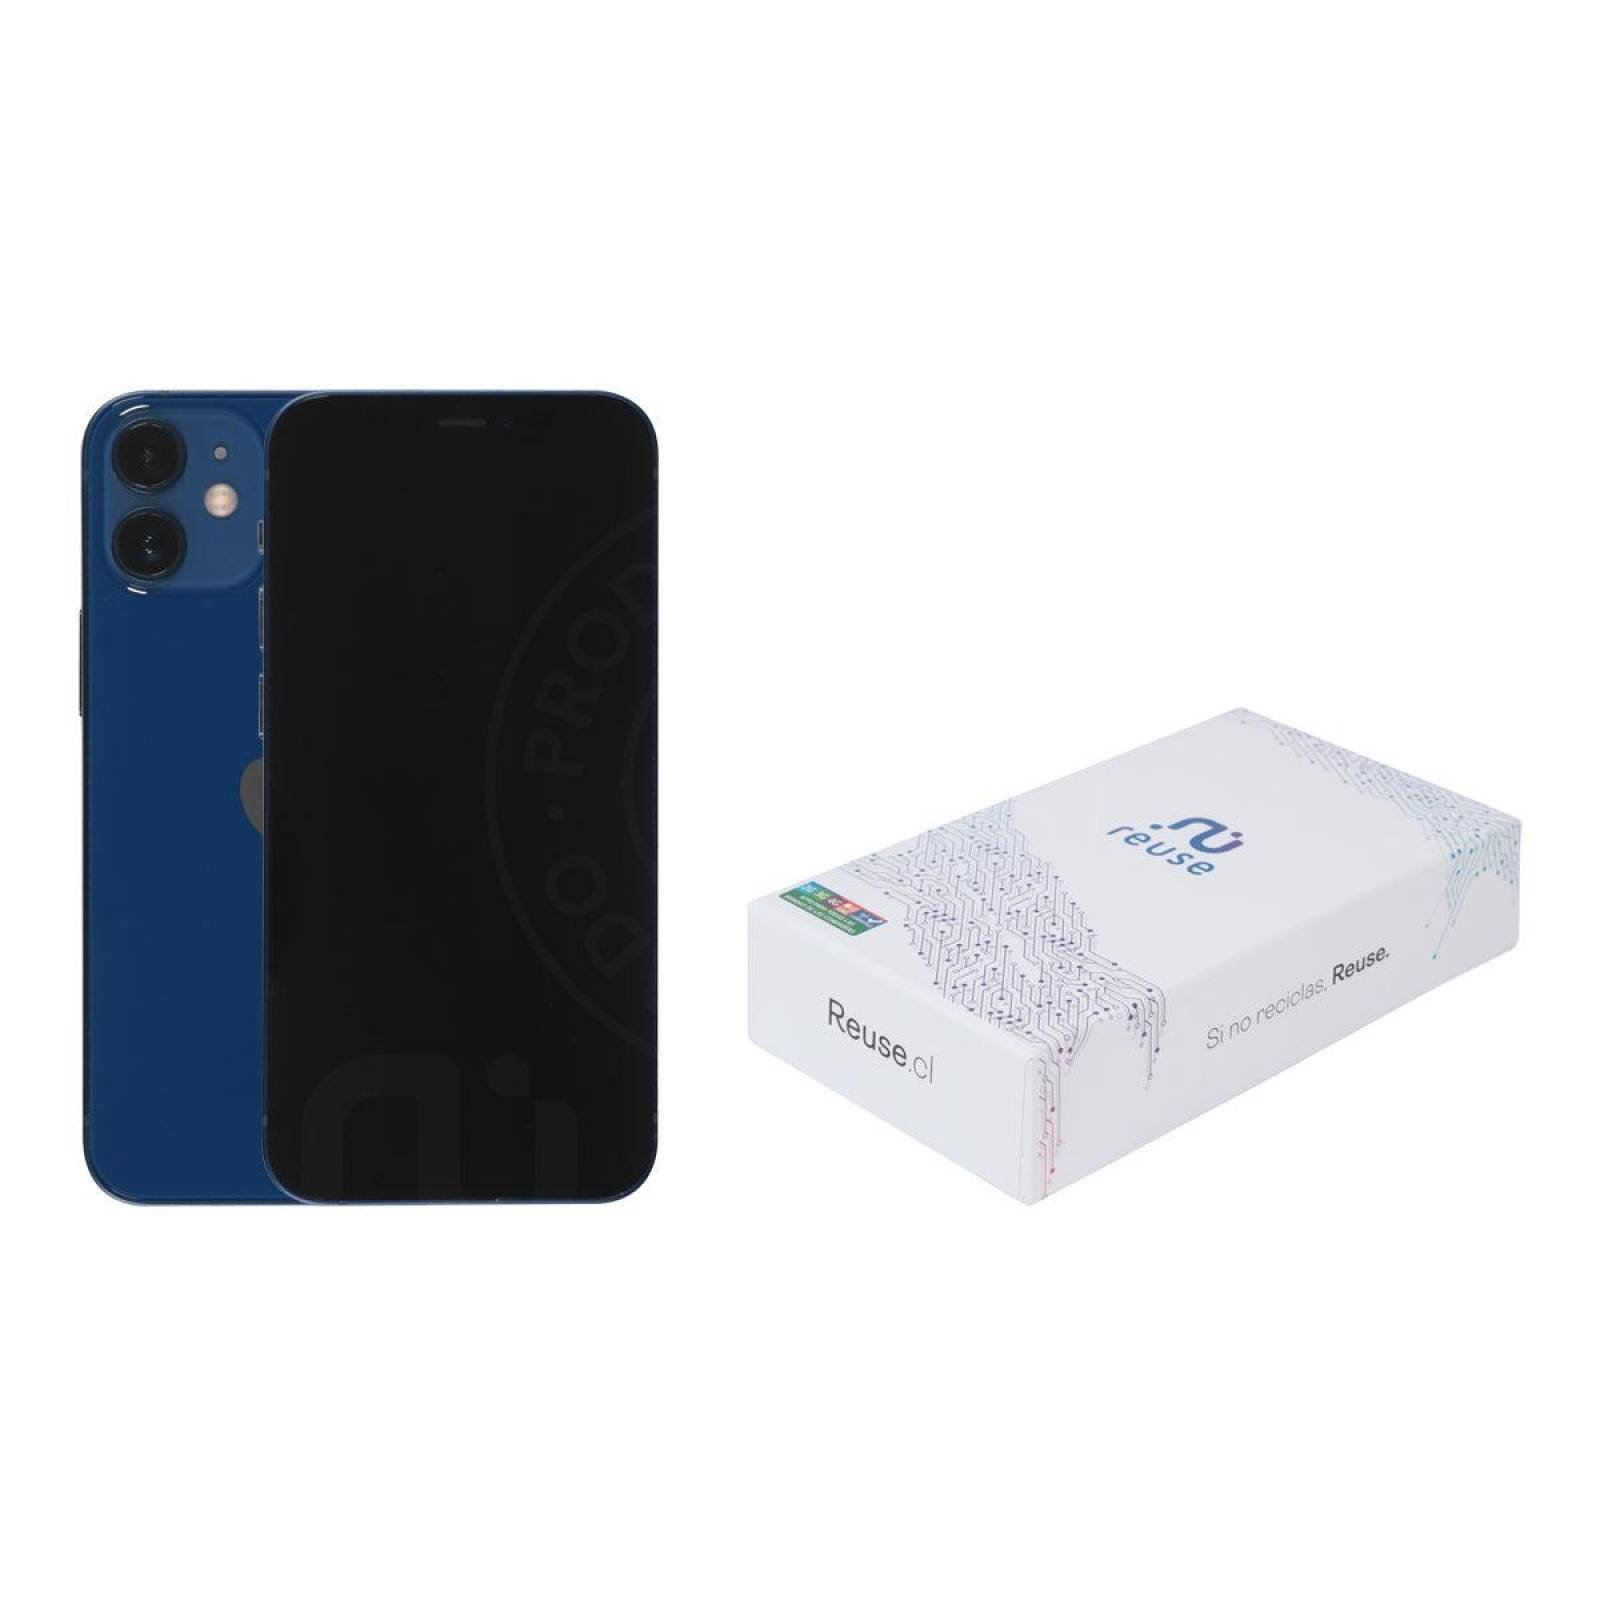 Apple iPhone 12 Mini, 128GB, Azul (Reacondicionado Premium